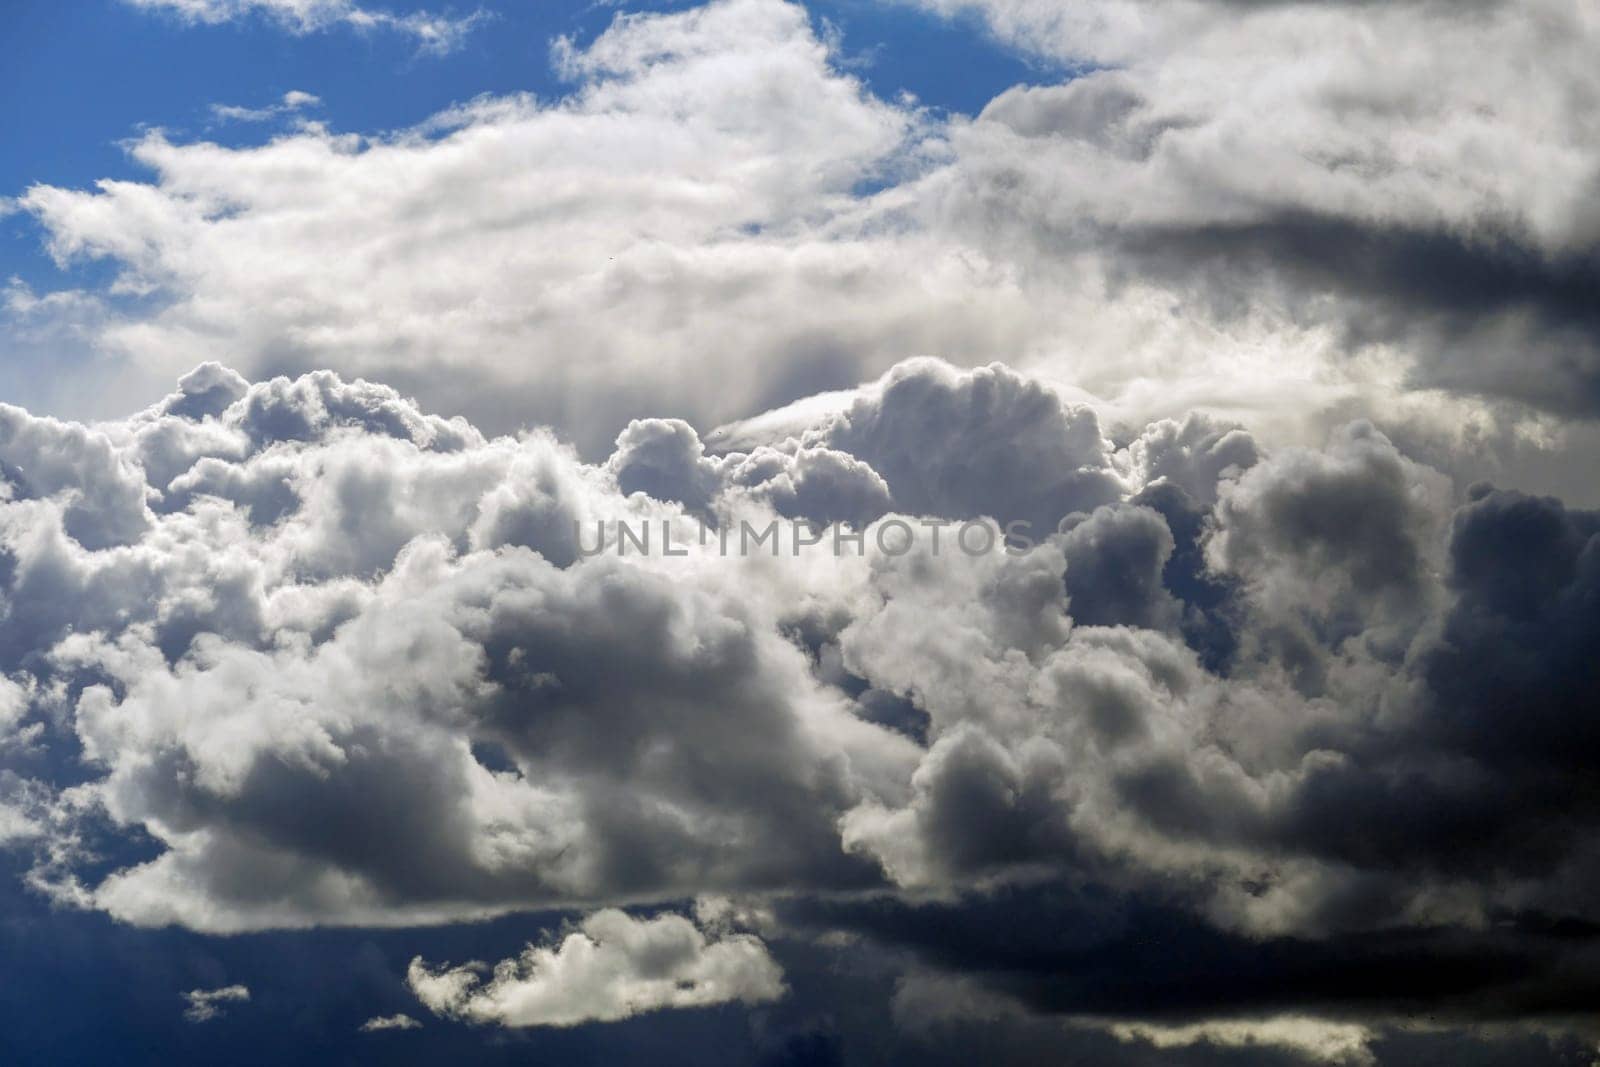 close-up dark clouds,storm clouds moving,stormy rain clouds, by nhatipoglu